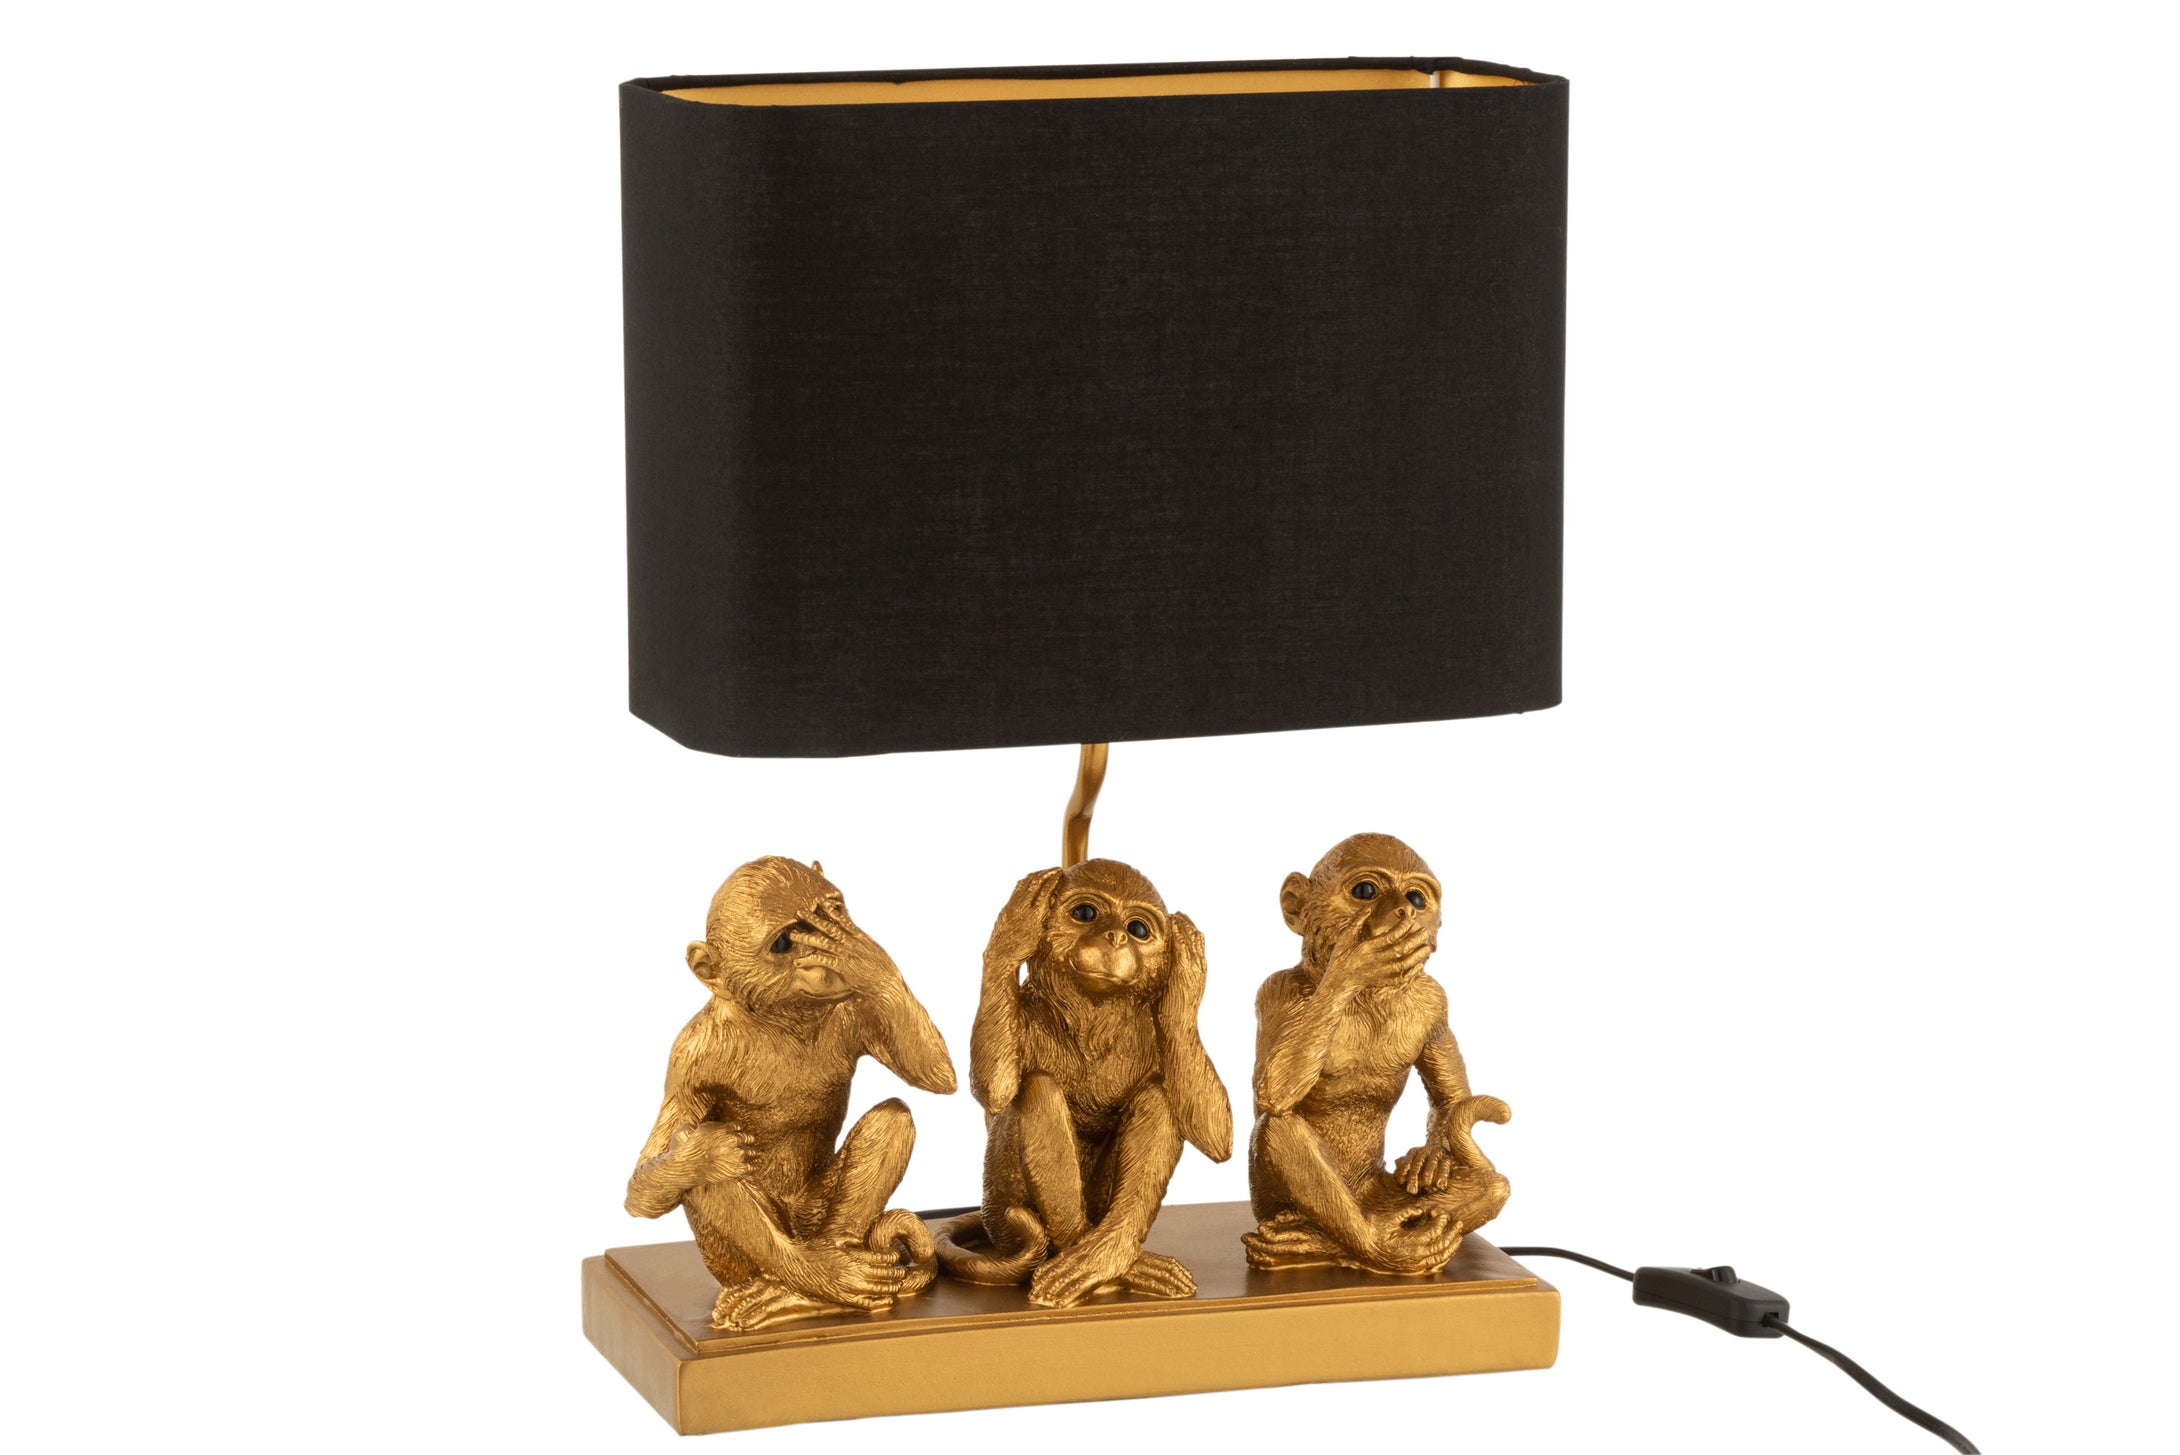 Originelle Tischlampe im Design von drei  goldfarbenen Schimpansen (nicht sehen, nicht hören, nicht reden) auf einem rechteckigen Sockel, die unter einem rechteckigen, schwarzen  Lampenschirm sitzen, der innen golden verkleidet ist.